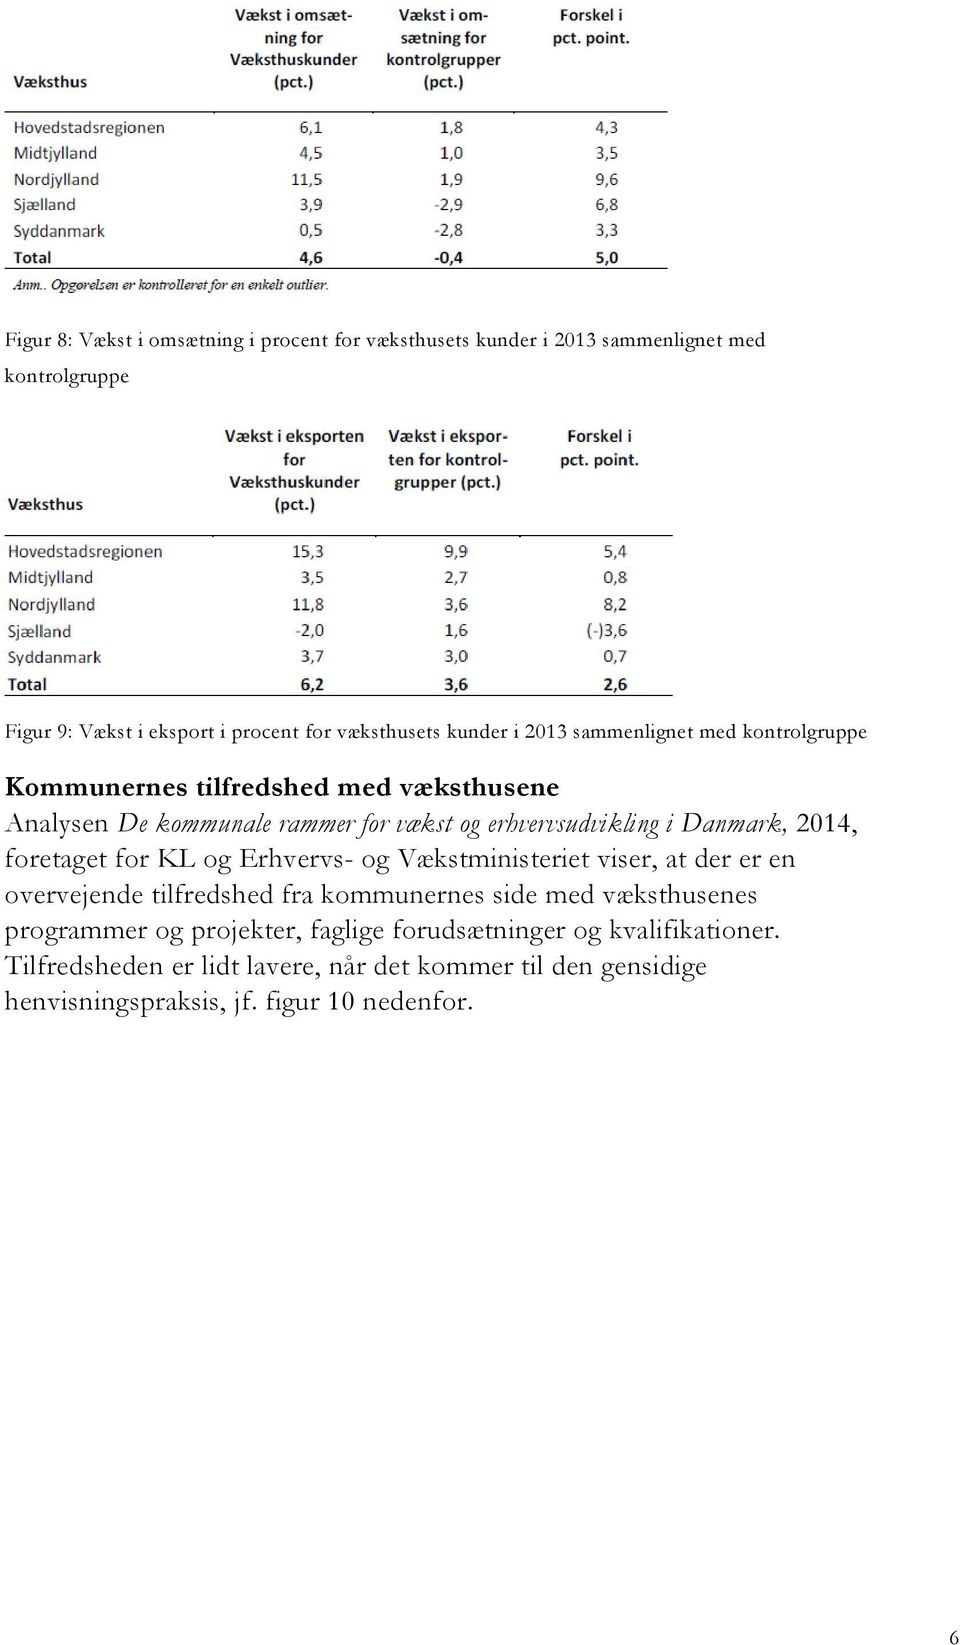 Danmark, 2014, foretaget for KL og Erhvervs- og Vækstministeriet viser, at der er en overvejende tilfredshed fra kommunernes side med væksthusenes